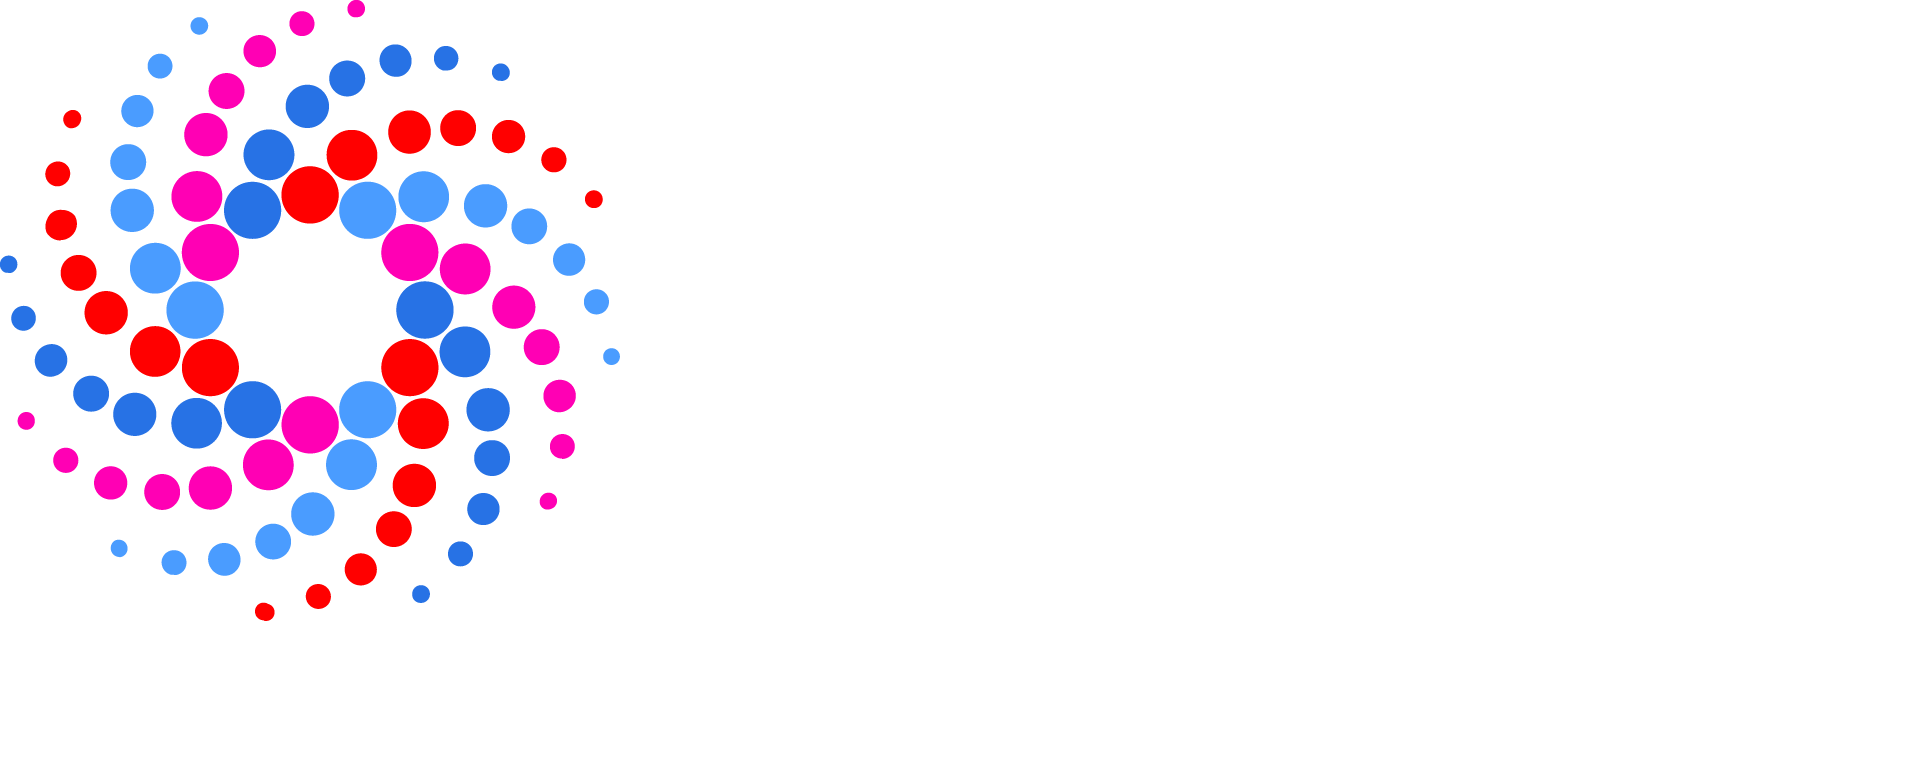 SC22 Full White Logo